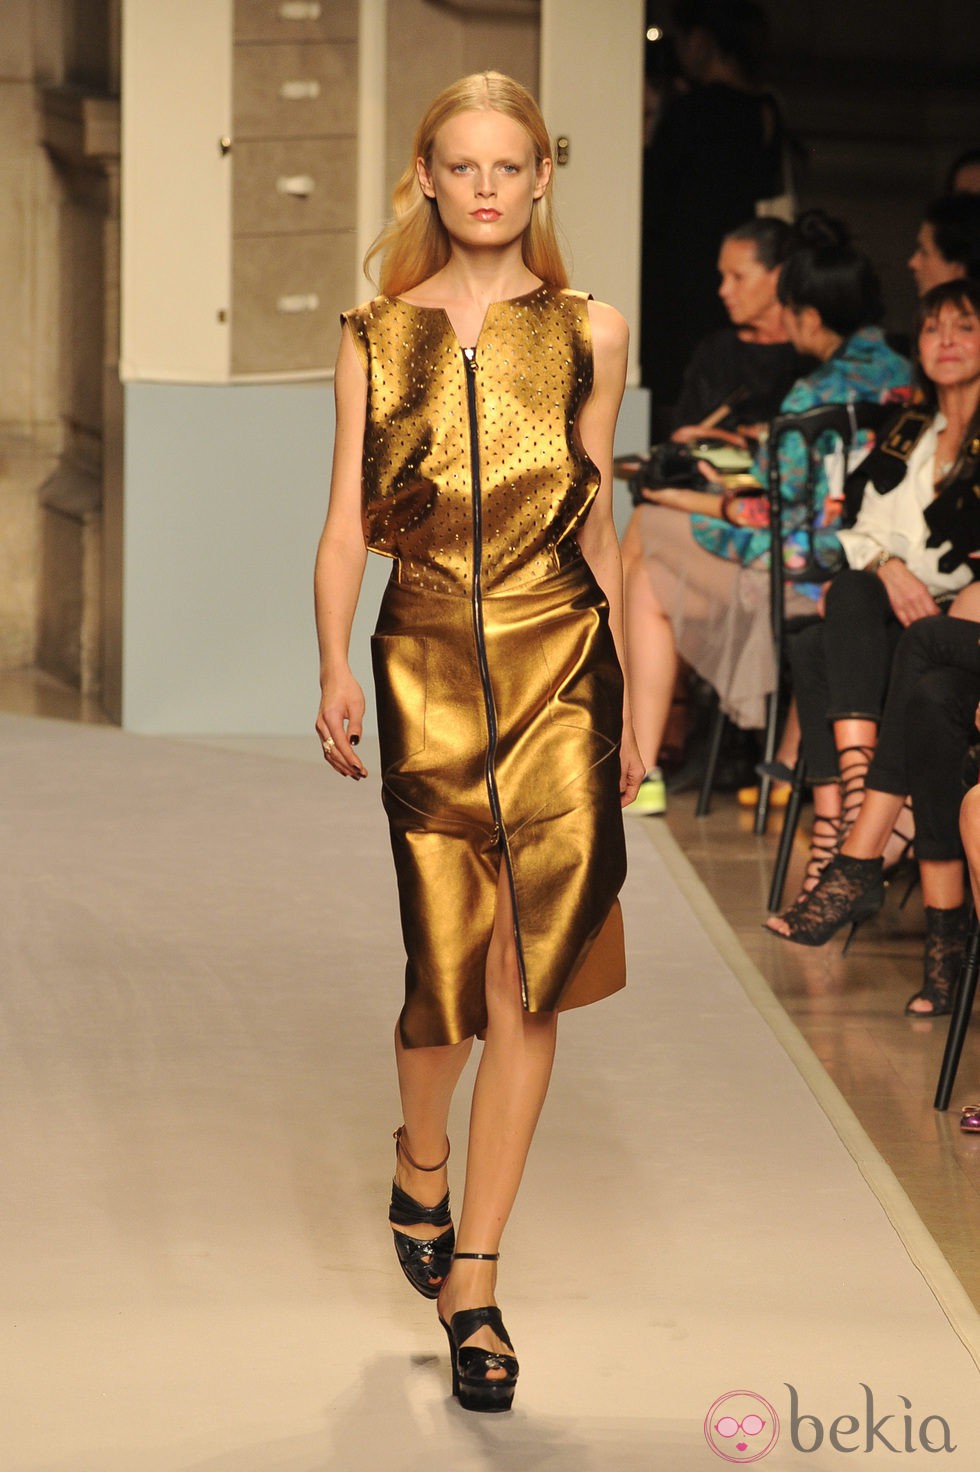 Vestido sin mangas dorado, de Loewe, colección primavera 2012